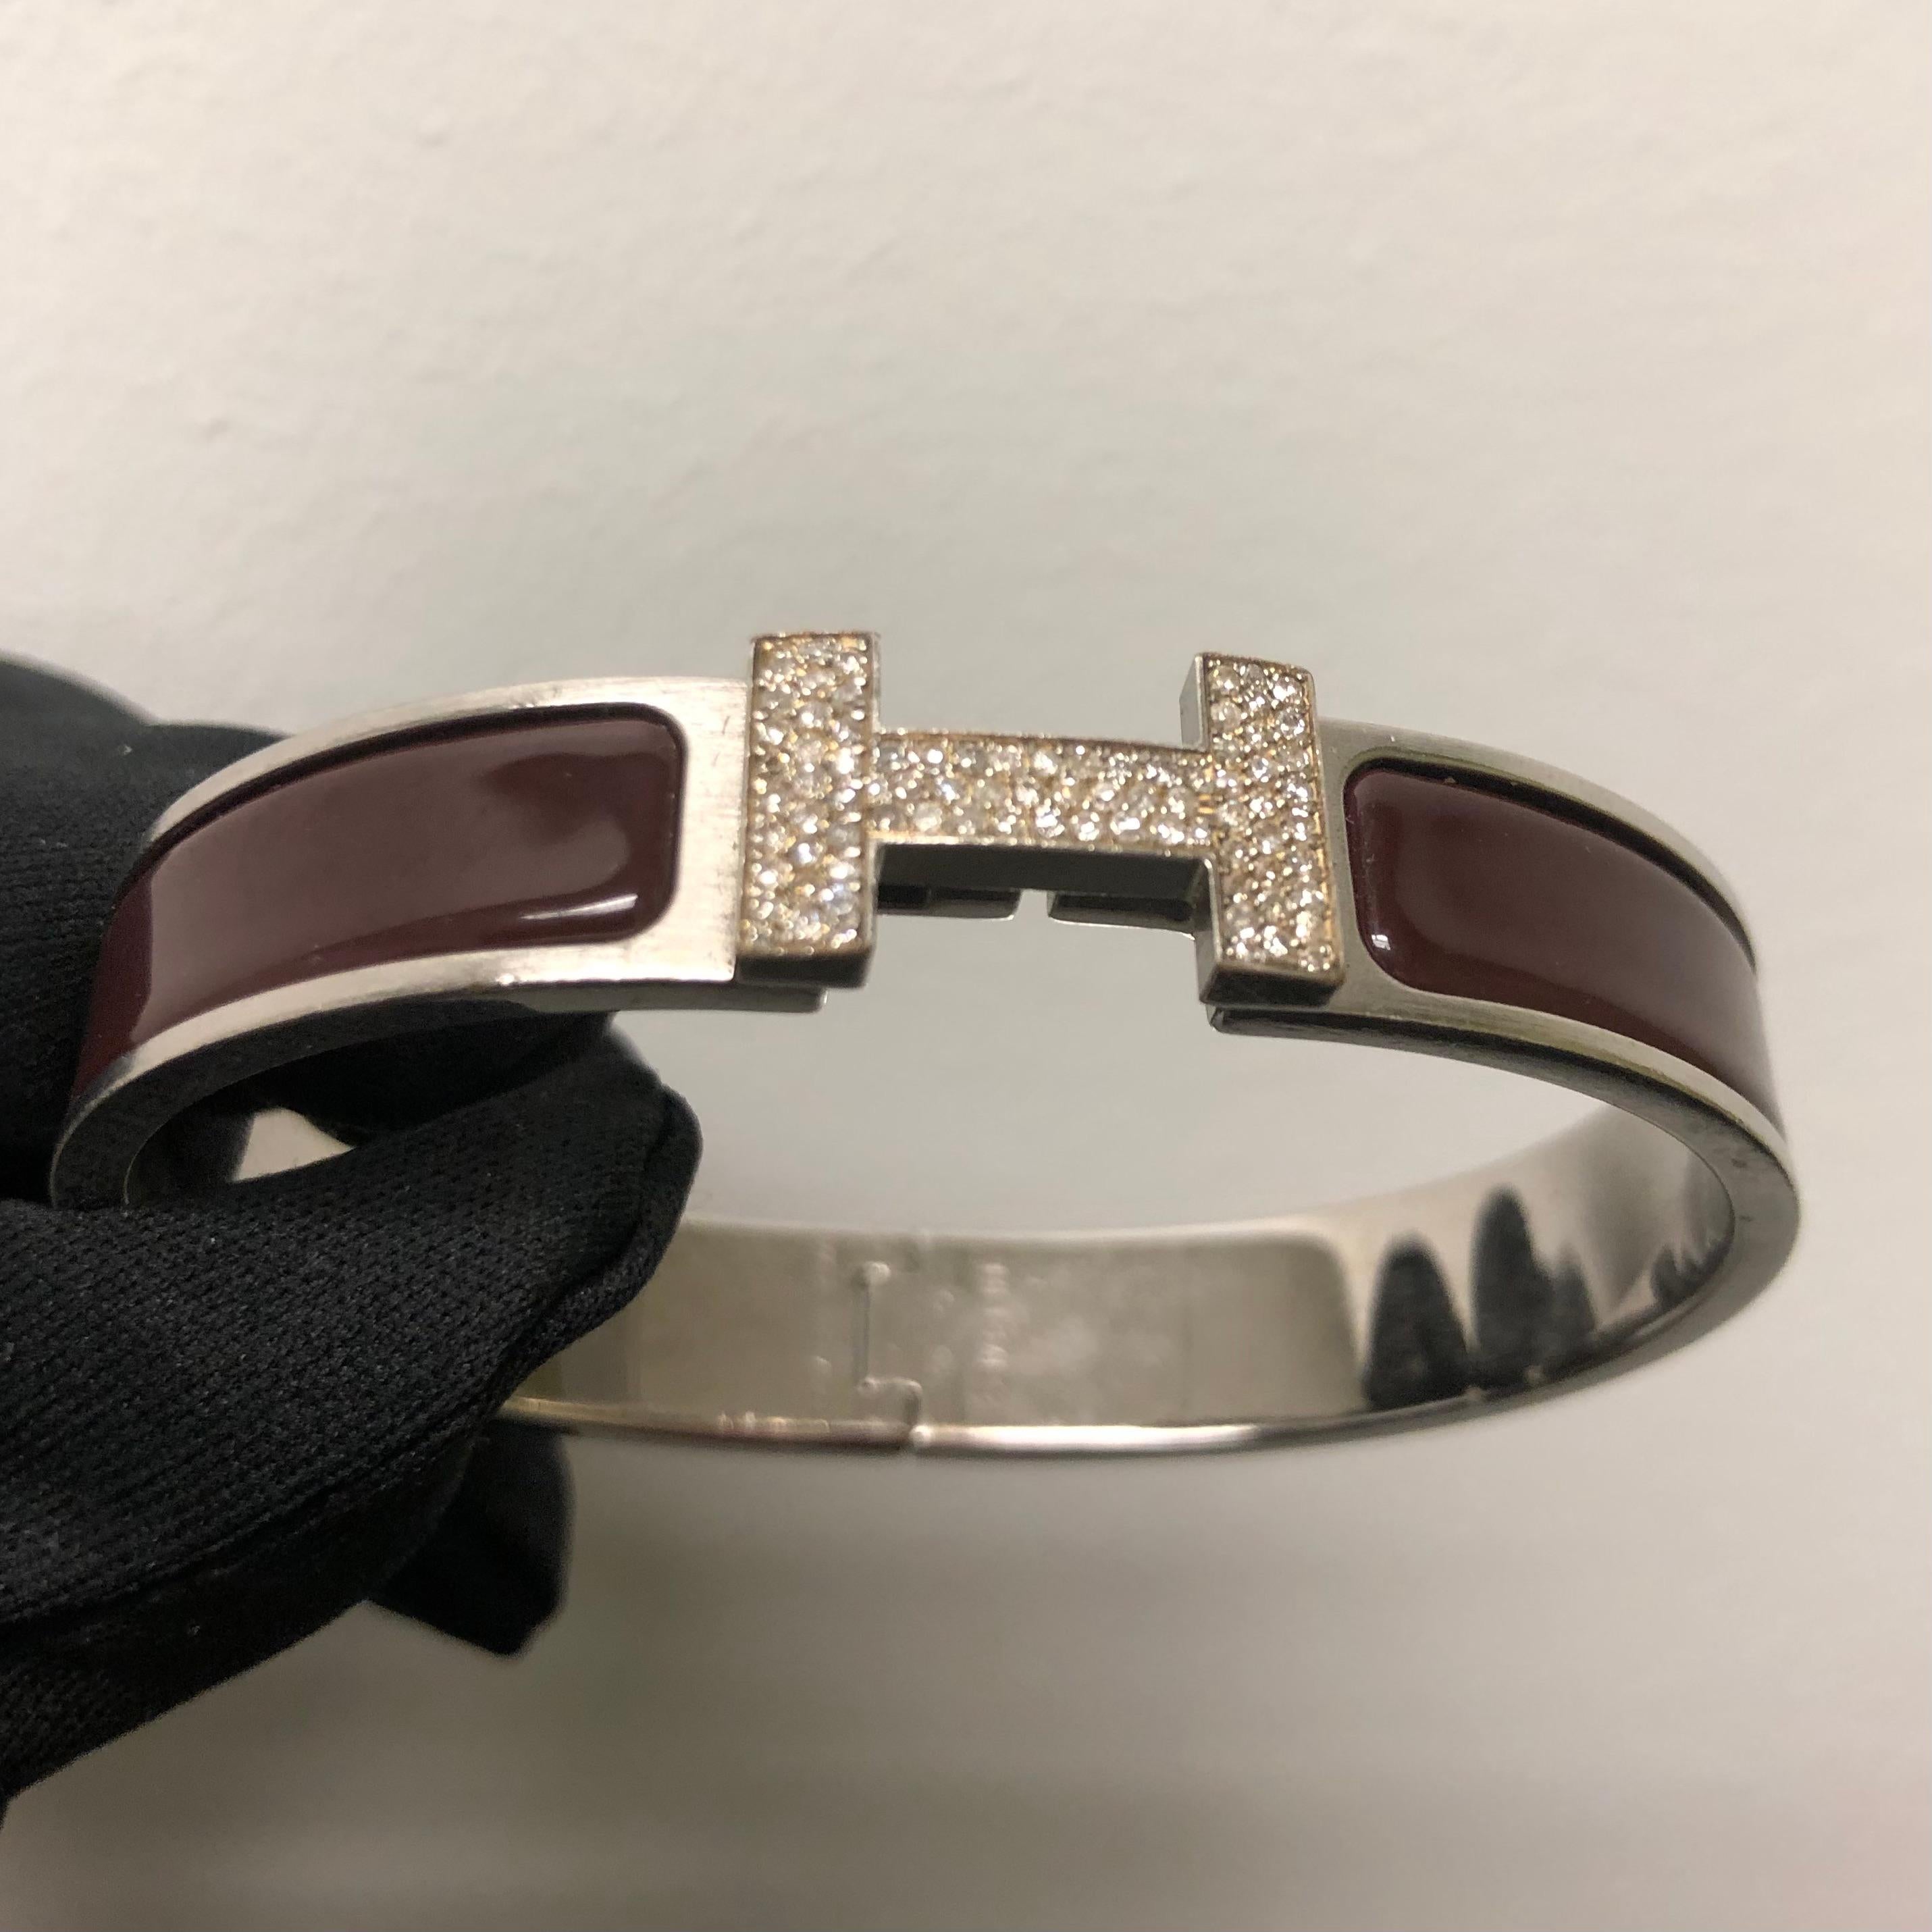 Bracelet Hermes Clic H avec diamants sur mesure, complet avec boîte d'origine.

Un bracelet Hermes Clic H taille GM en brun et argent est serti à la main d'environ 1,25 carats de diamants naturels SI-I d'origine minière. Les diamants brillent de